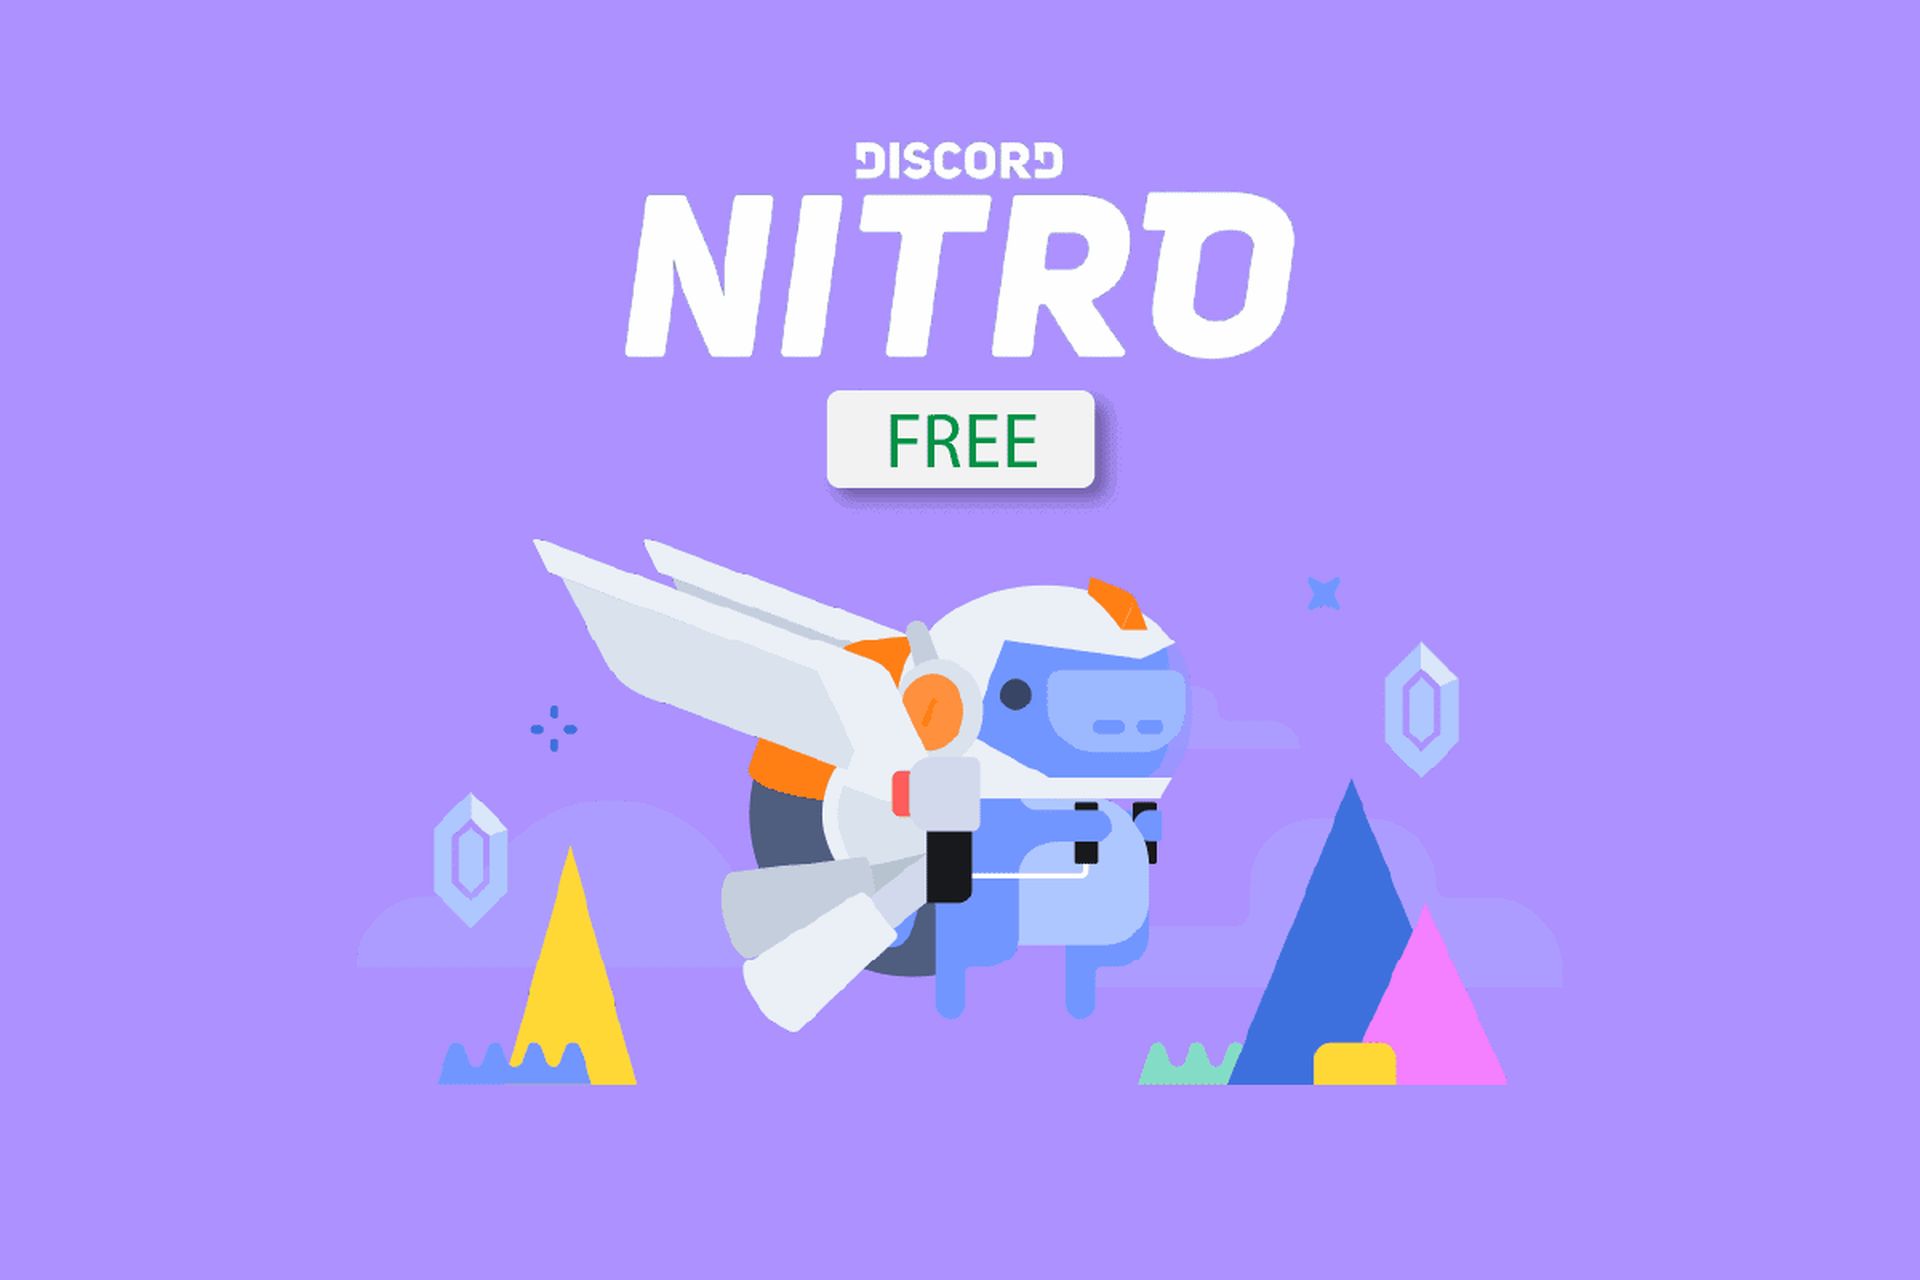 Epic Games free Discord Nitro